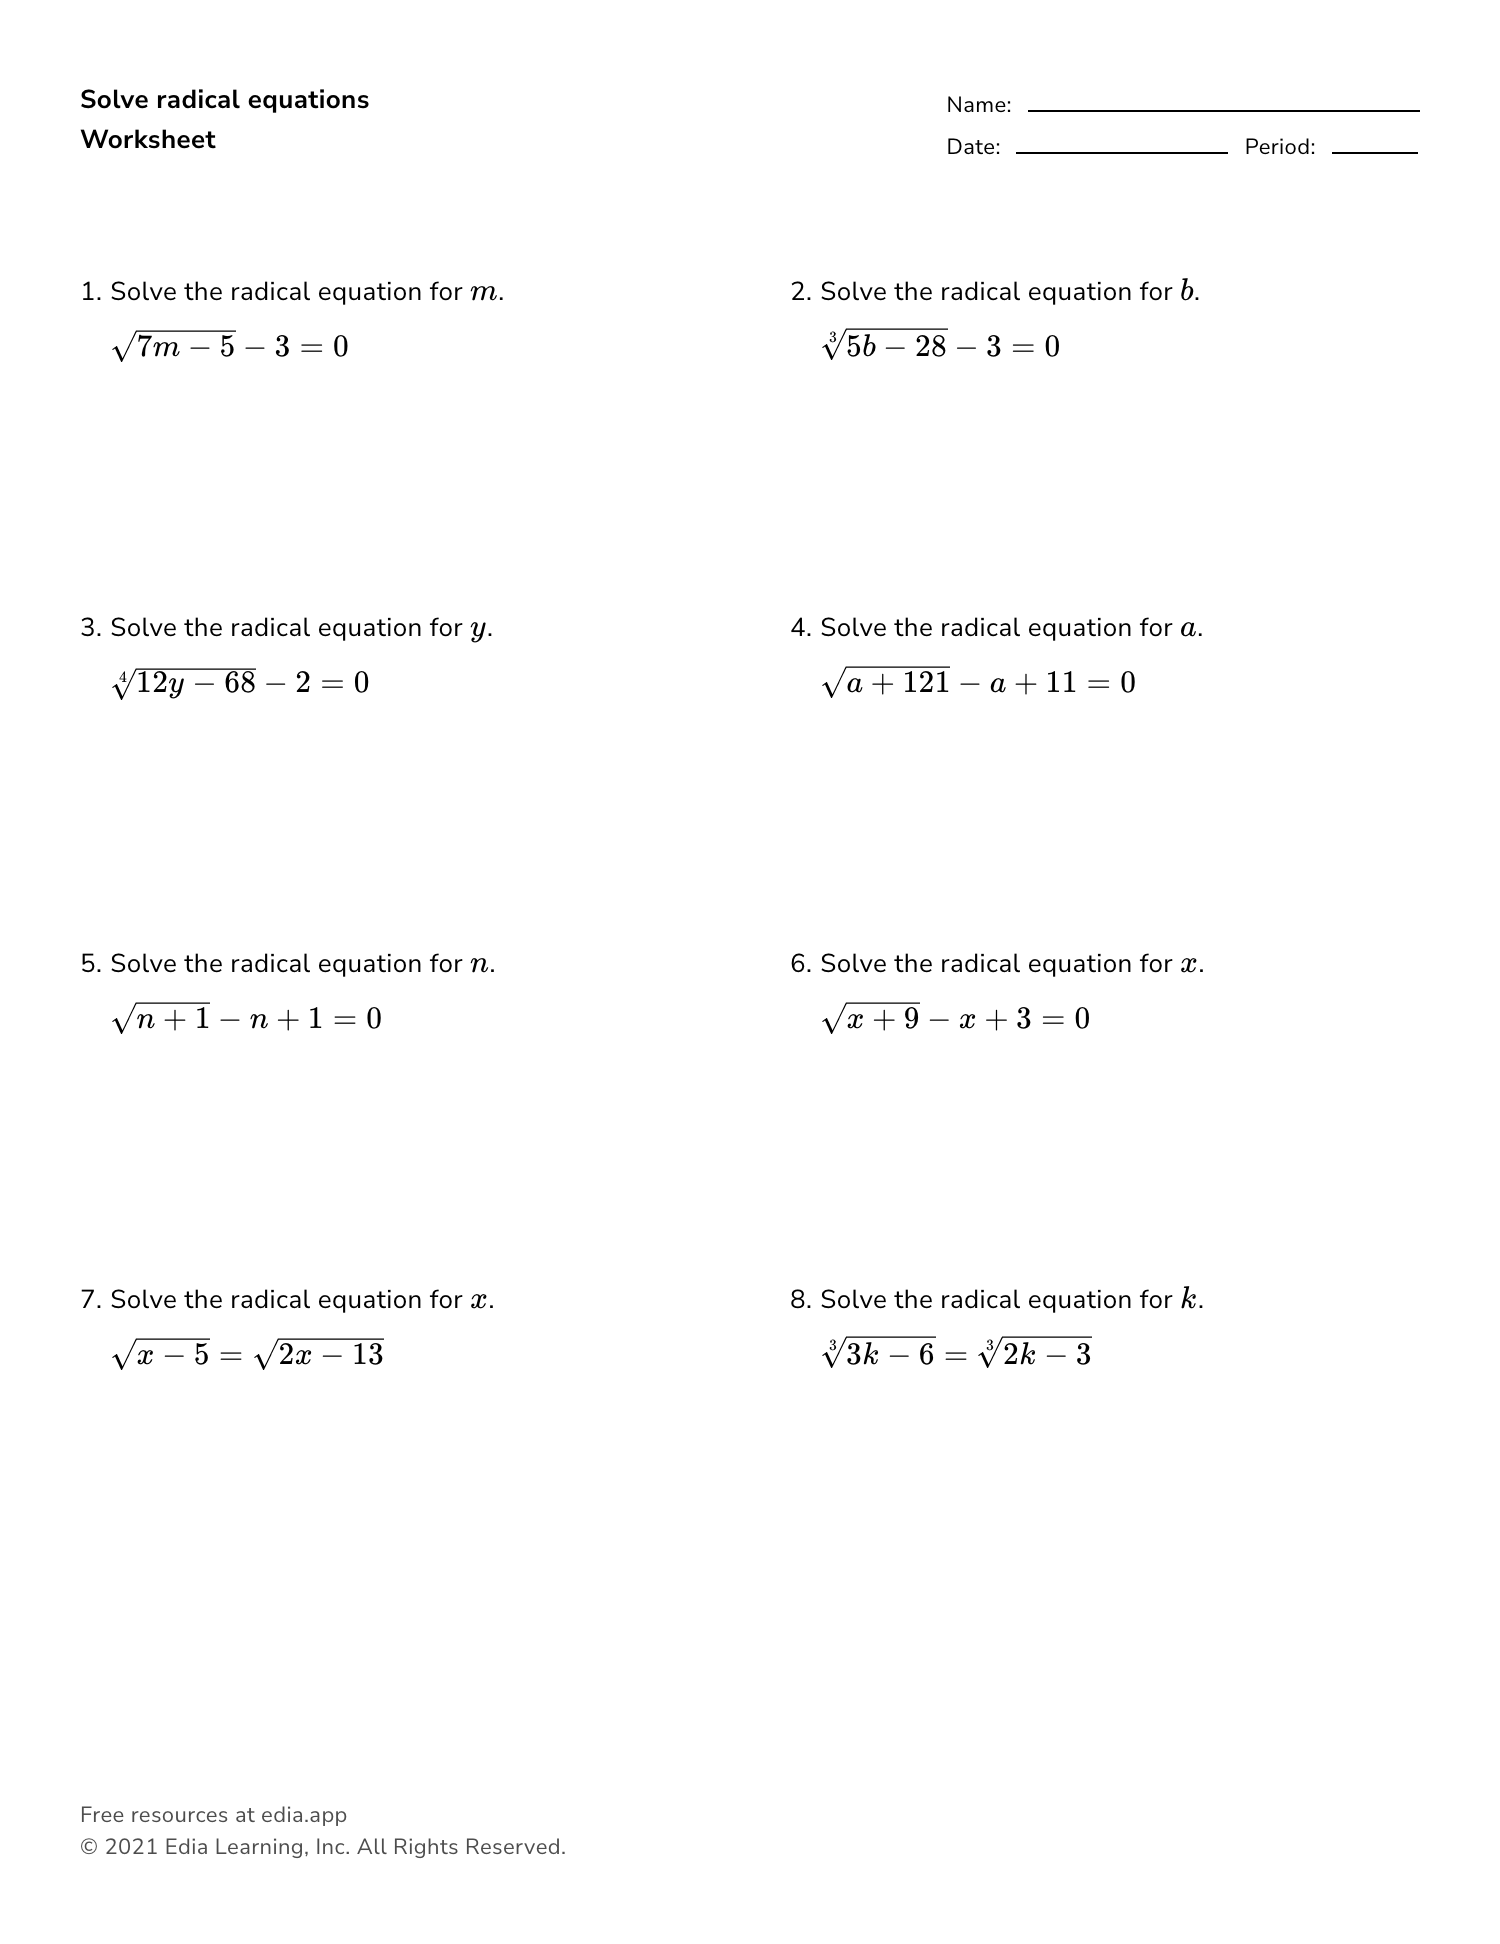 Solve Radical Equations - Worksheet Intended For Solve Radical Equations Worksheet